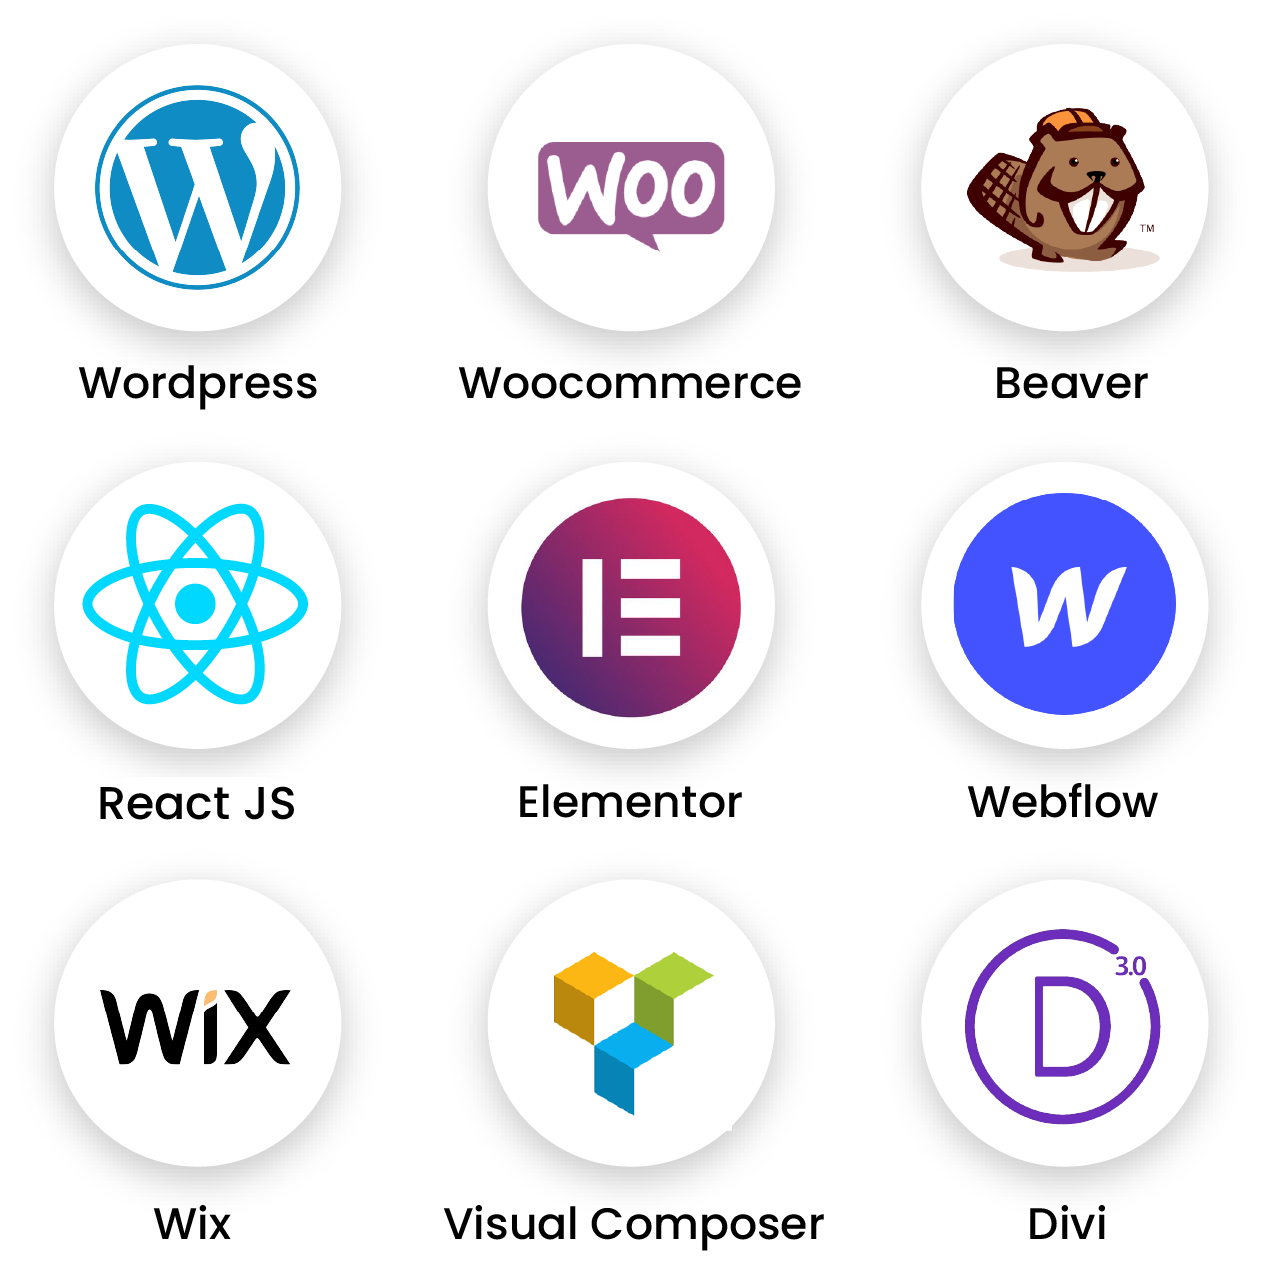 Logo's of popular website builders like WordPress, Webflow and React JS